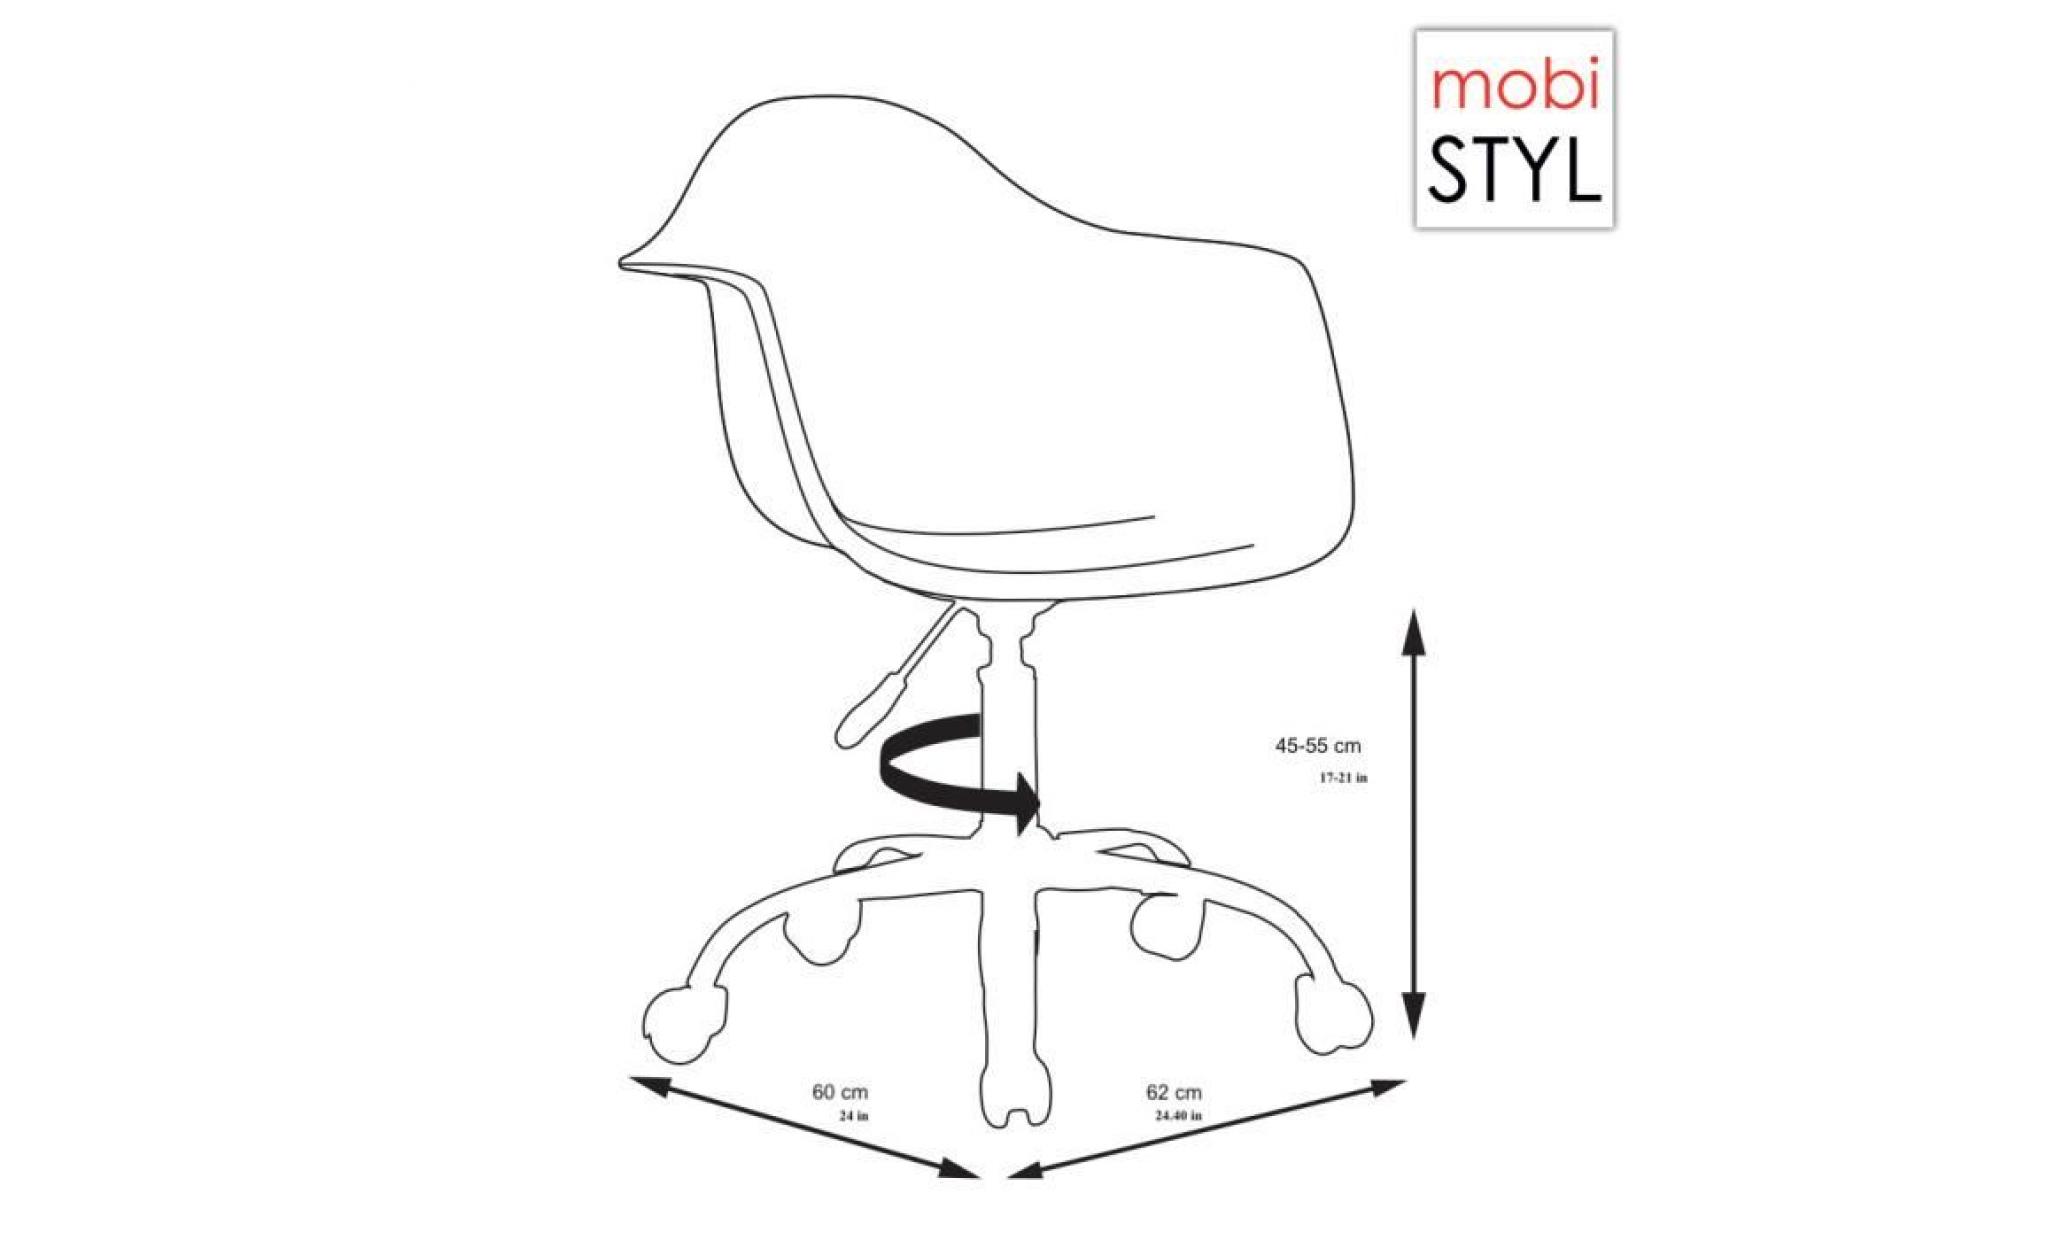 1 x fauteuil bureau style eames eiffel daw roulettes chrome pivotant assise reglable bleu marine mobistyl® pas cher